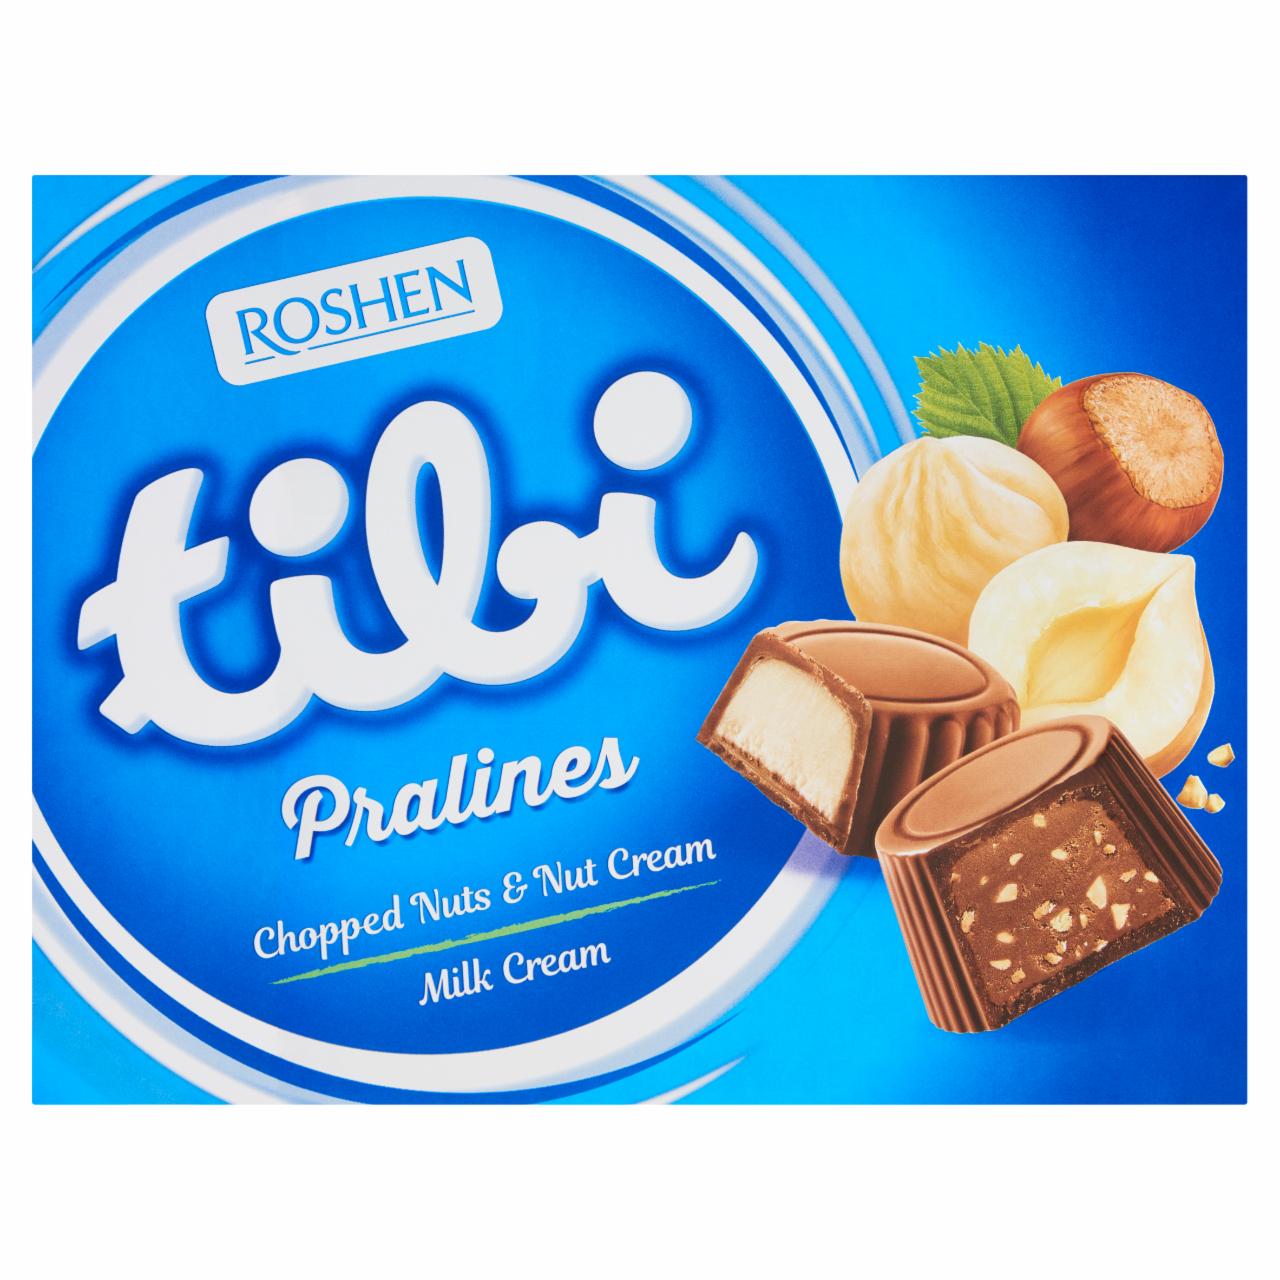 Képek - Tibi Pralines tejcsokoládé desszert válogatás 117 g